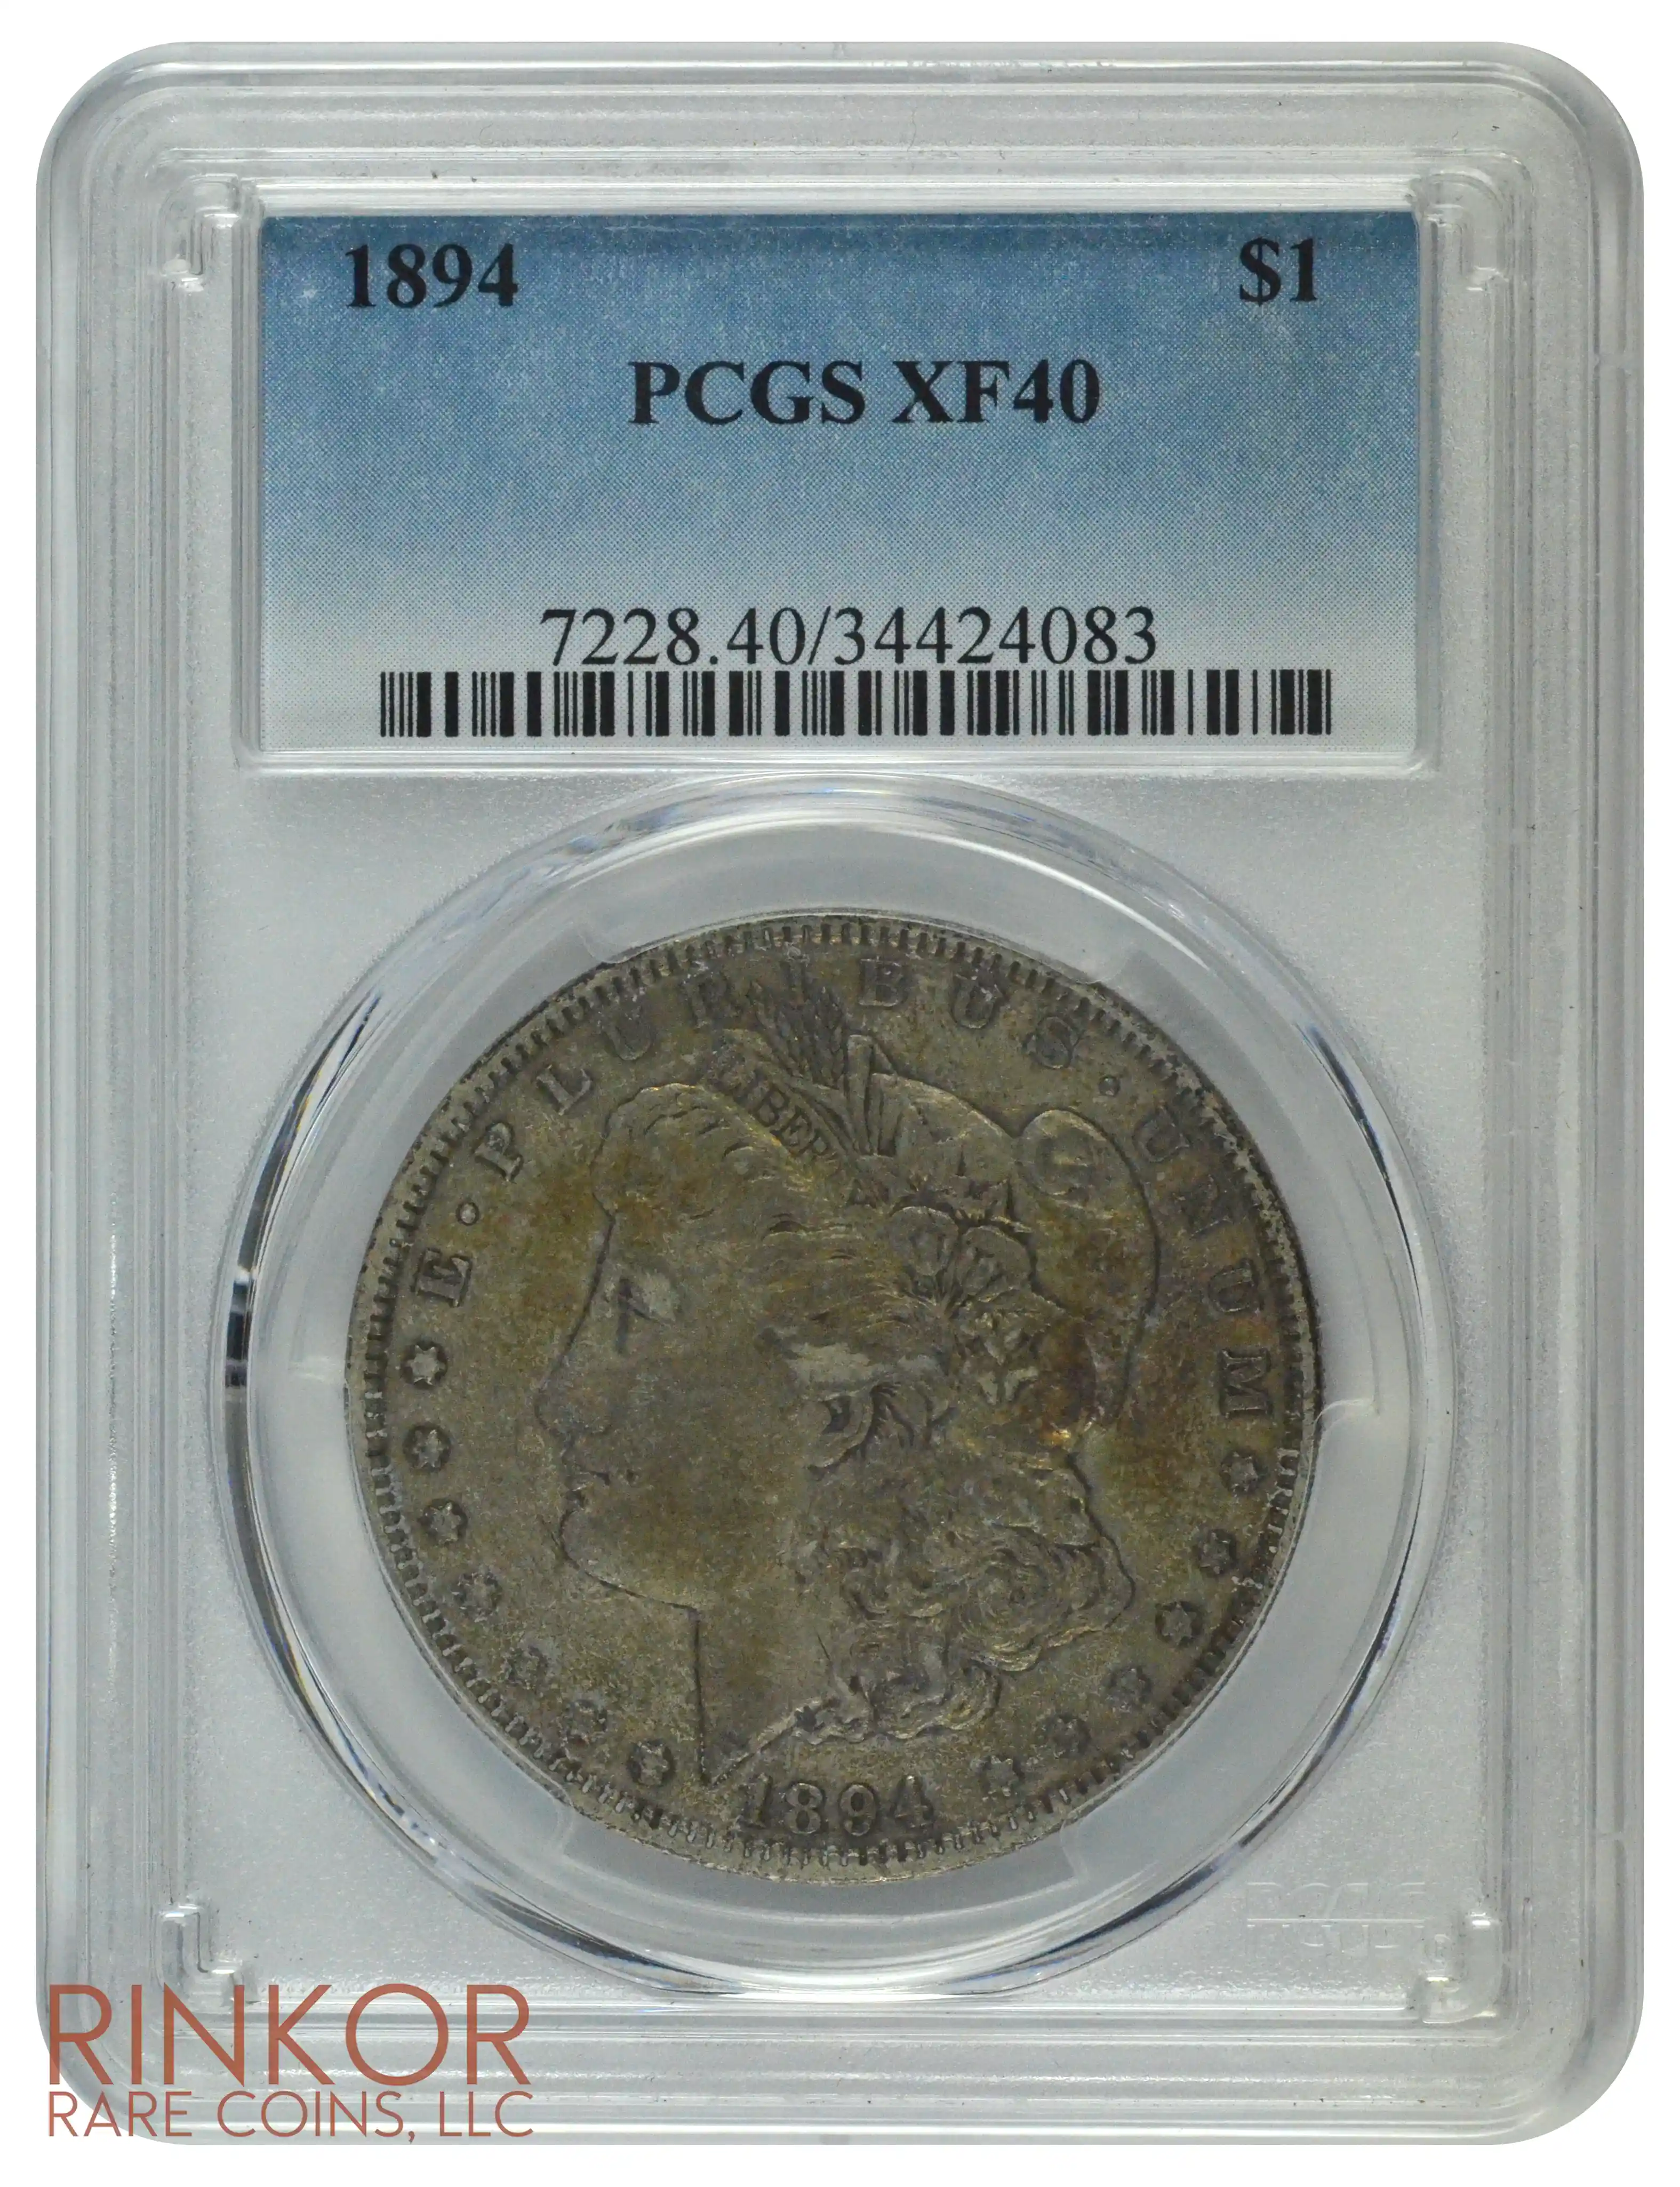 1894 $1 PCGS XF-40